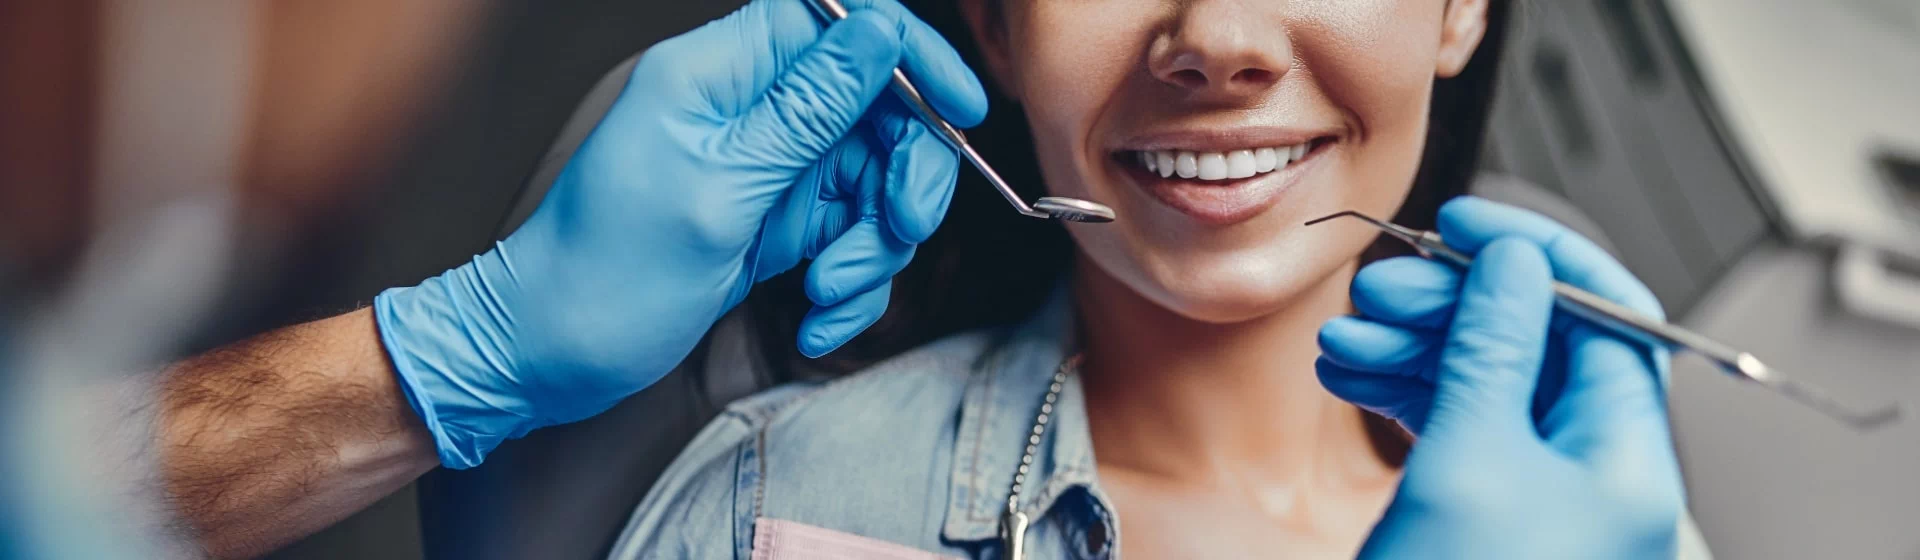 kobieta mająca zabieg dentystyczny